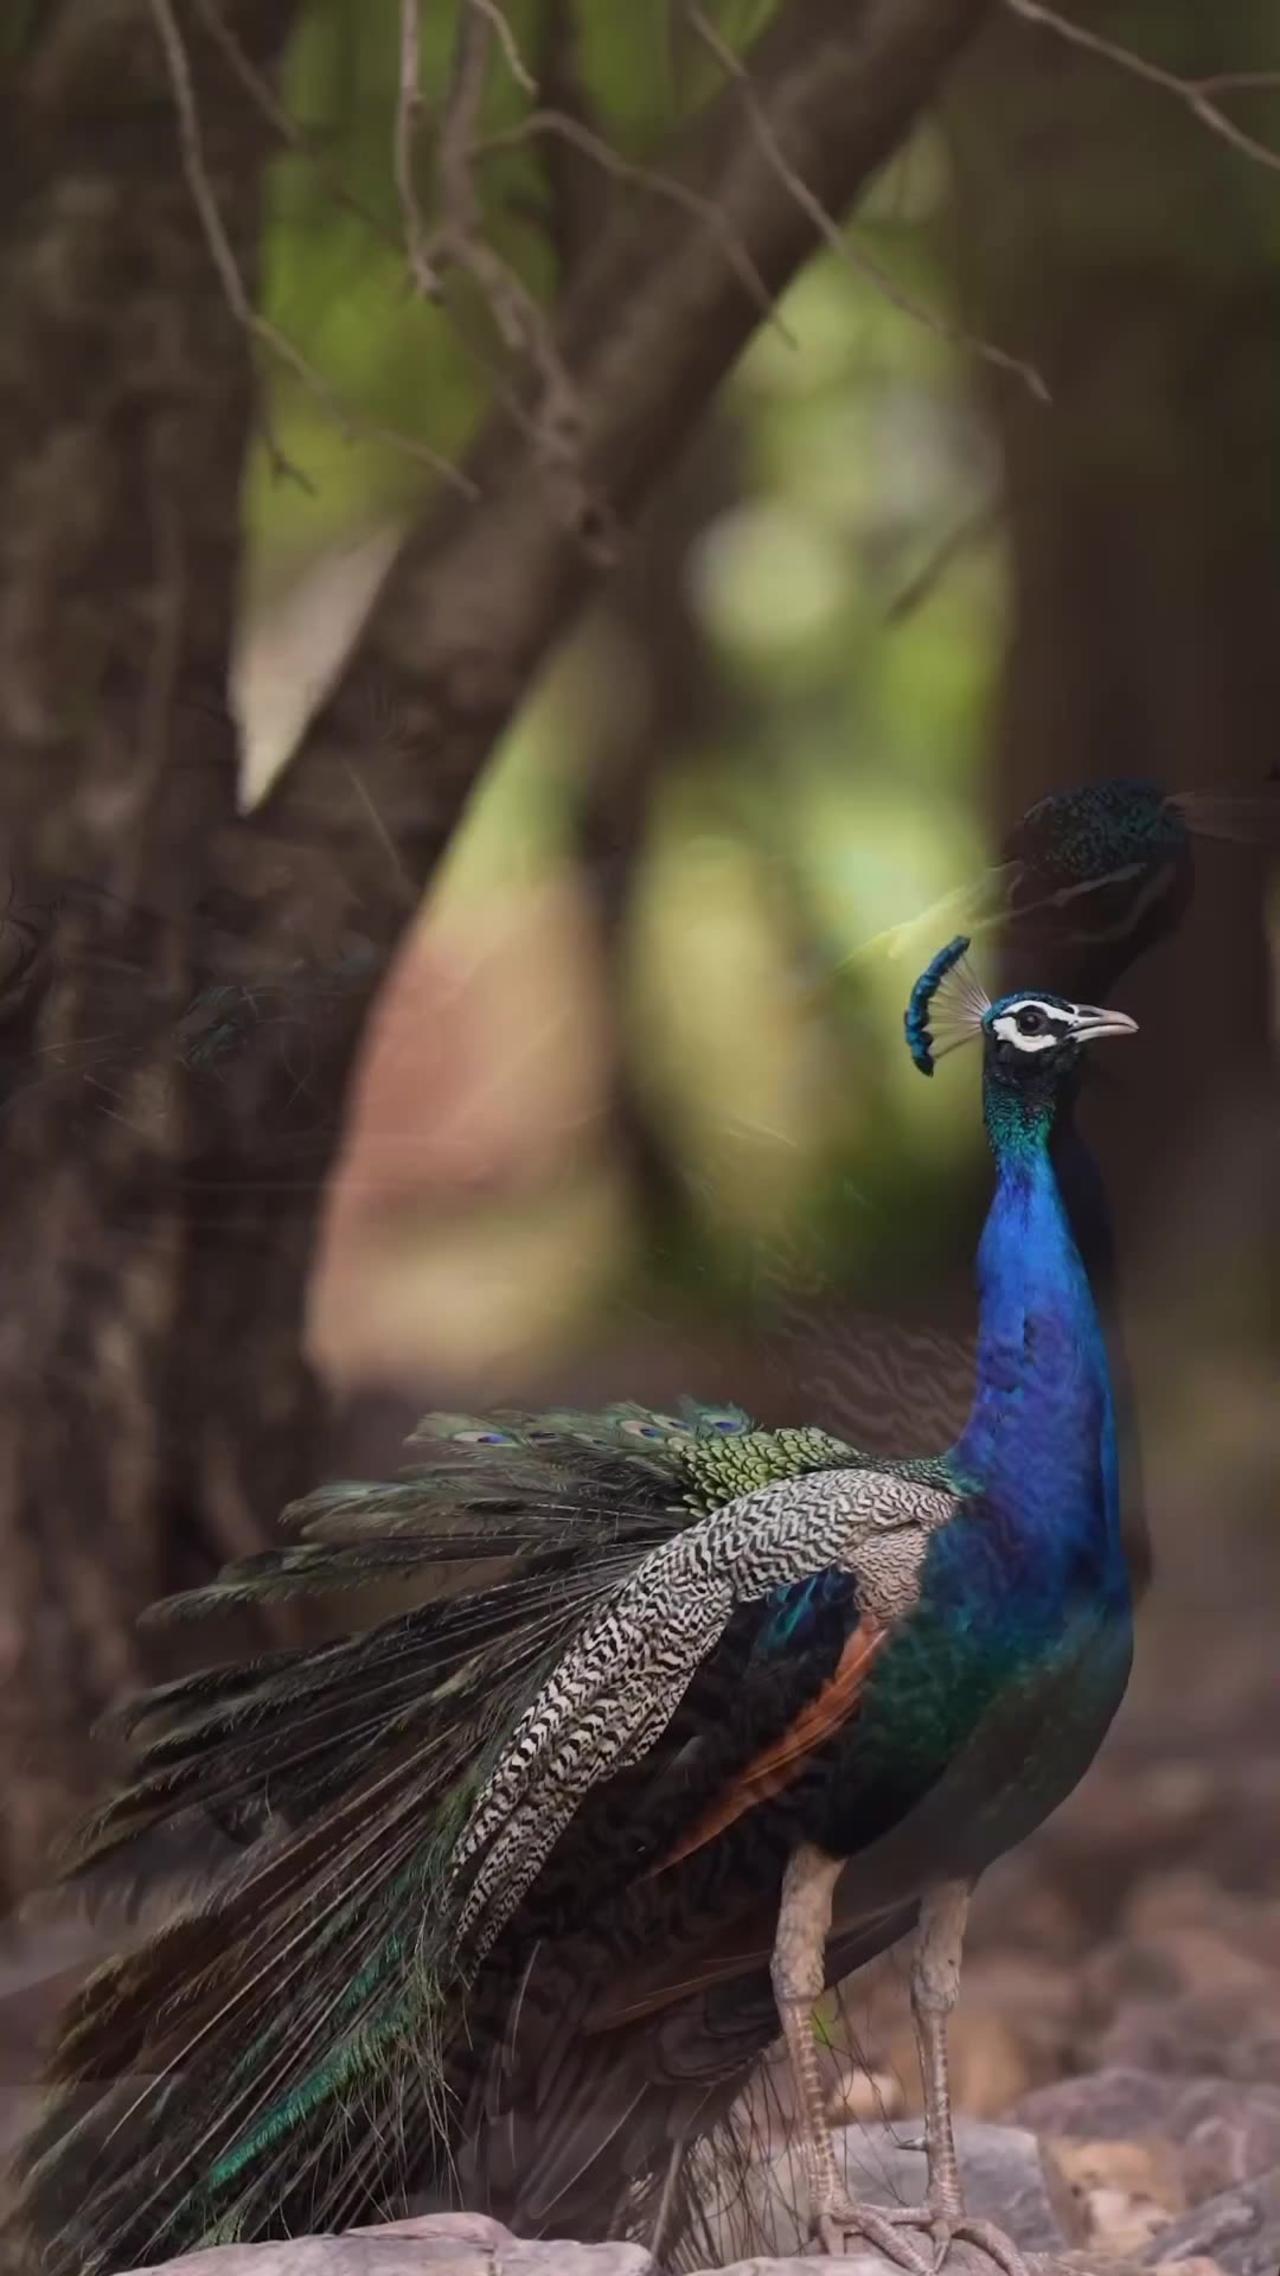 So Beautiful Peacock 🦚